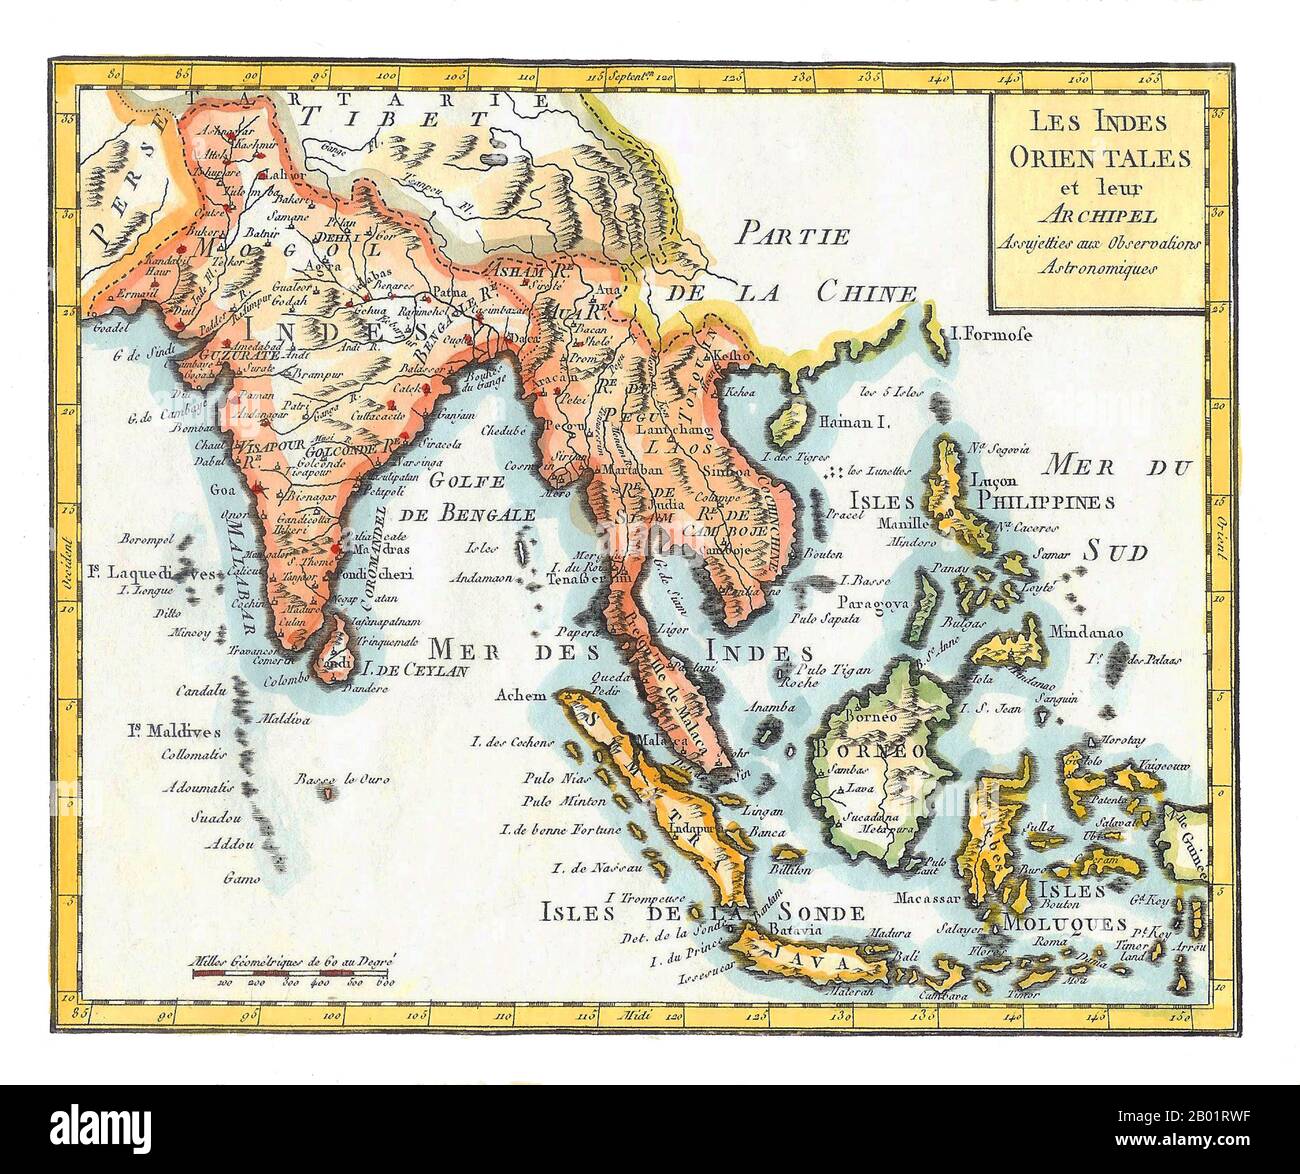 Asia/Oceano Indiano: "Indie Orientali". Mappa colorata a mano di Joseph de la porte (19 gennaio 1714 - 19 dicembre 1779) dal suo "Atlas moderne Portatif", 1799. Indie Orientali è un termine usato dagli europei a partire dal XVI secolo per identificare quello che oggi è conosciuto come subcontinente indiano o Asia meridionale, Asia sudorientale e le isole dell'Oceania, tra cui l'arcipelago malese e le Filippine. Il termine ha tradizionalmente escluso Cina, Giappone e altri paesi a nord dell'India e dell'Himalaya. I nomi "India" e "Indie" derivano dal fiume Indo nell'odierno Pakistan. Foto Stock